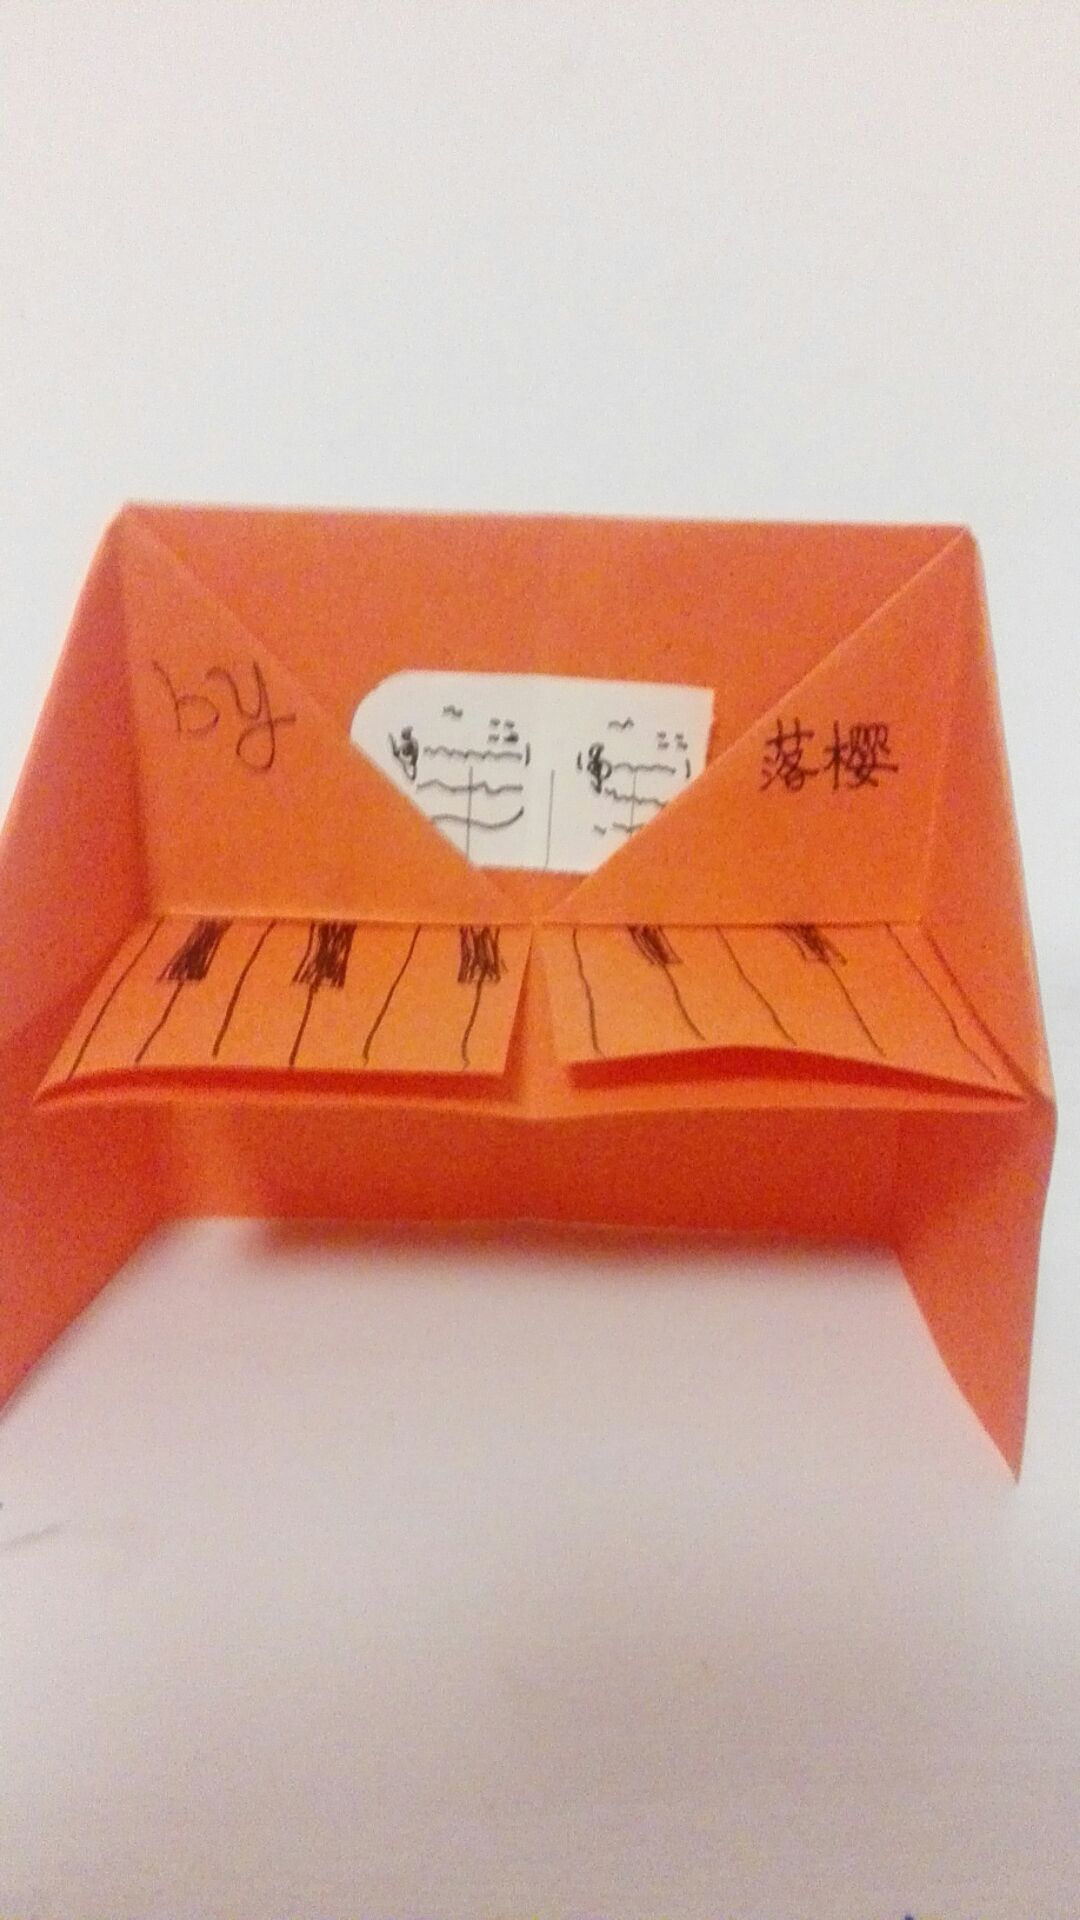 教你用衍纸制作超级漂亮的小钢琴 创意DIY纸艺╭★肉丁网